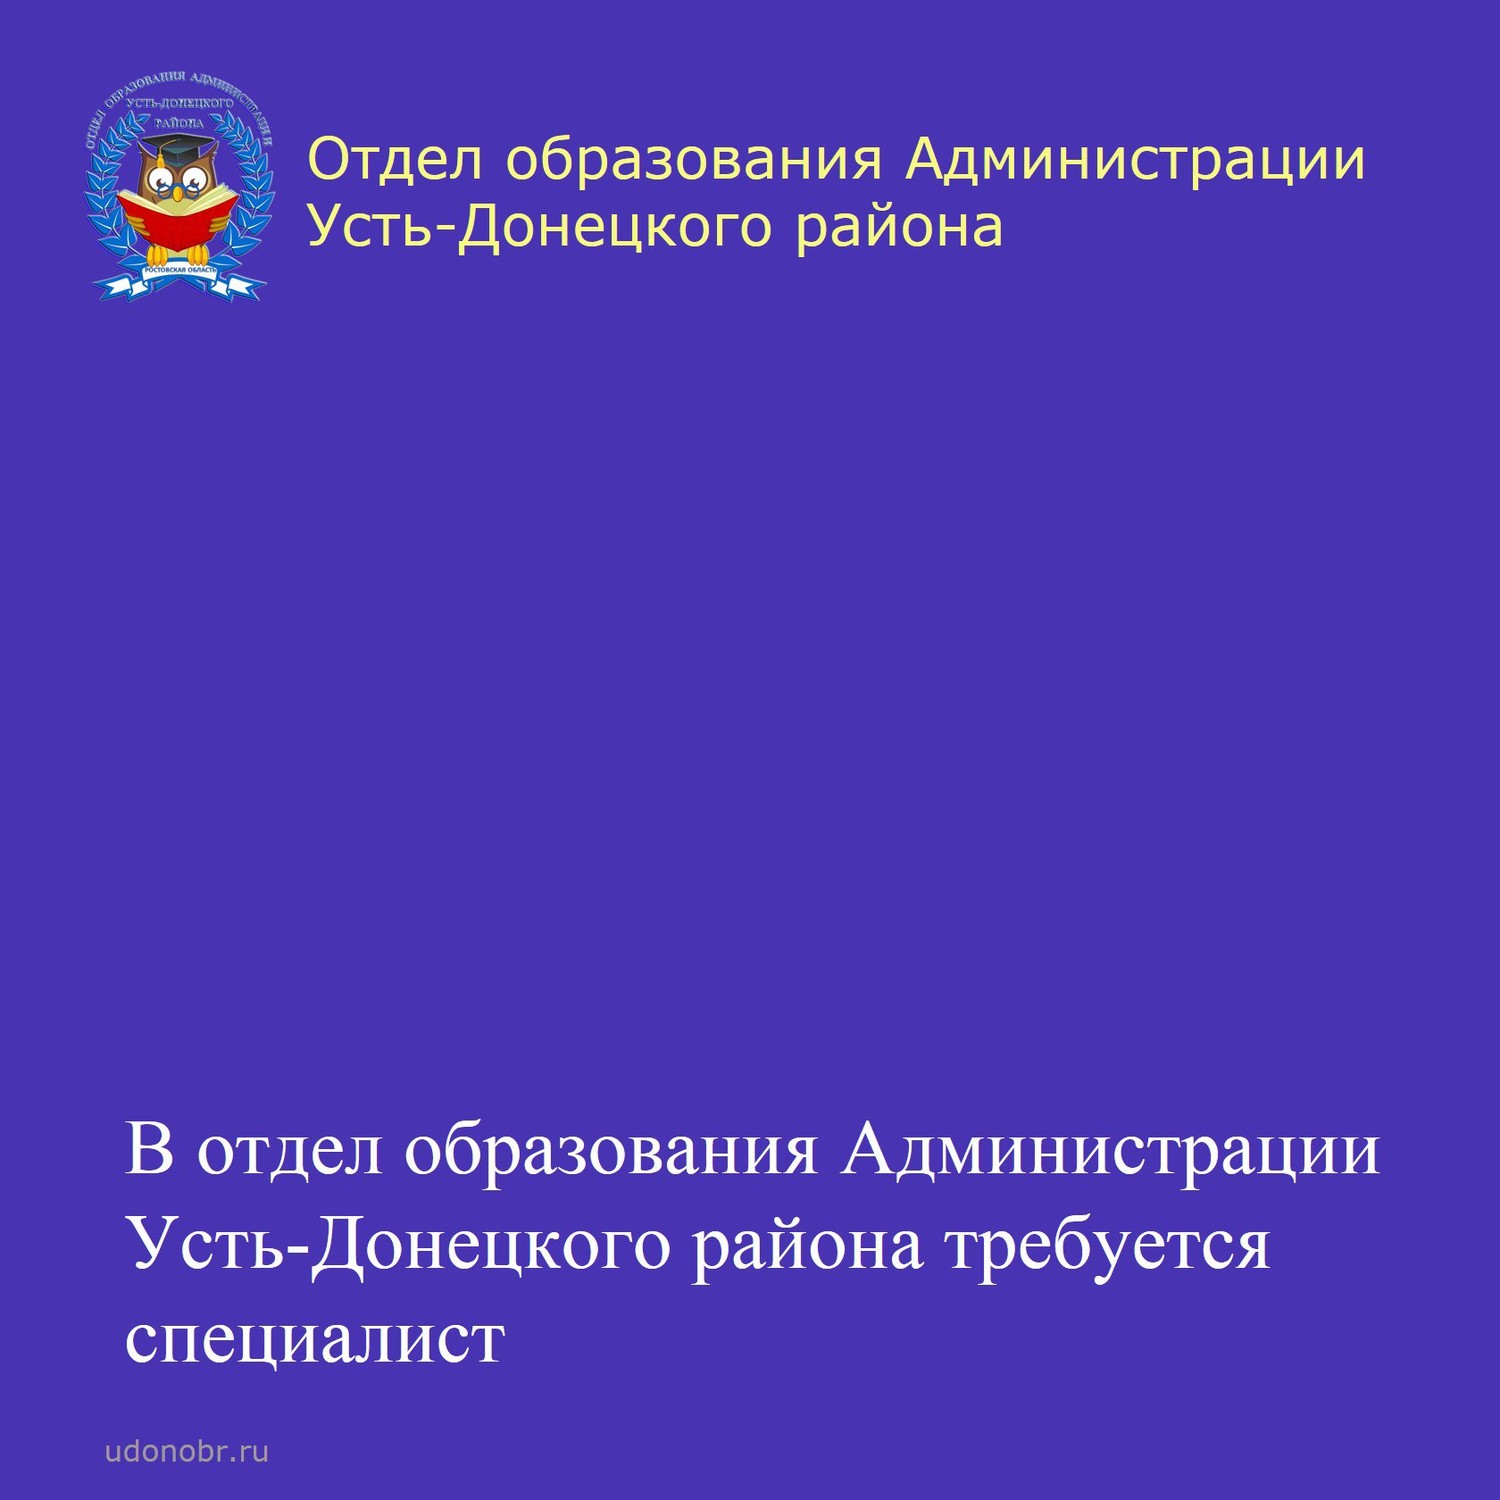 В отдел образования Администрации Усть-Донецкого района требуется специалист